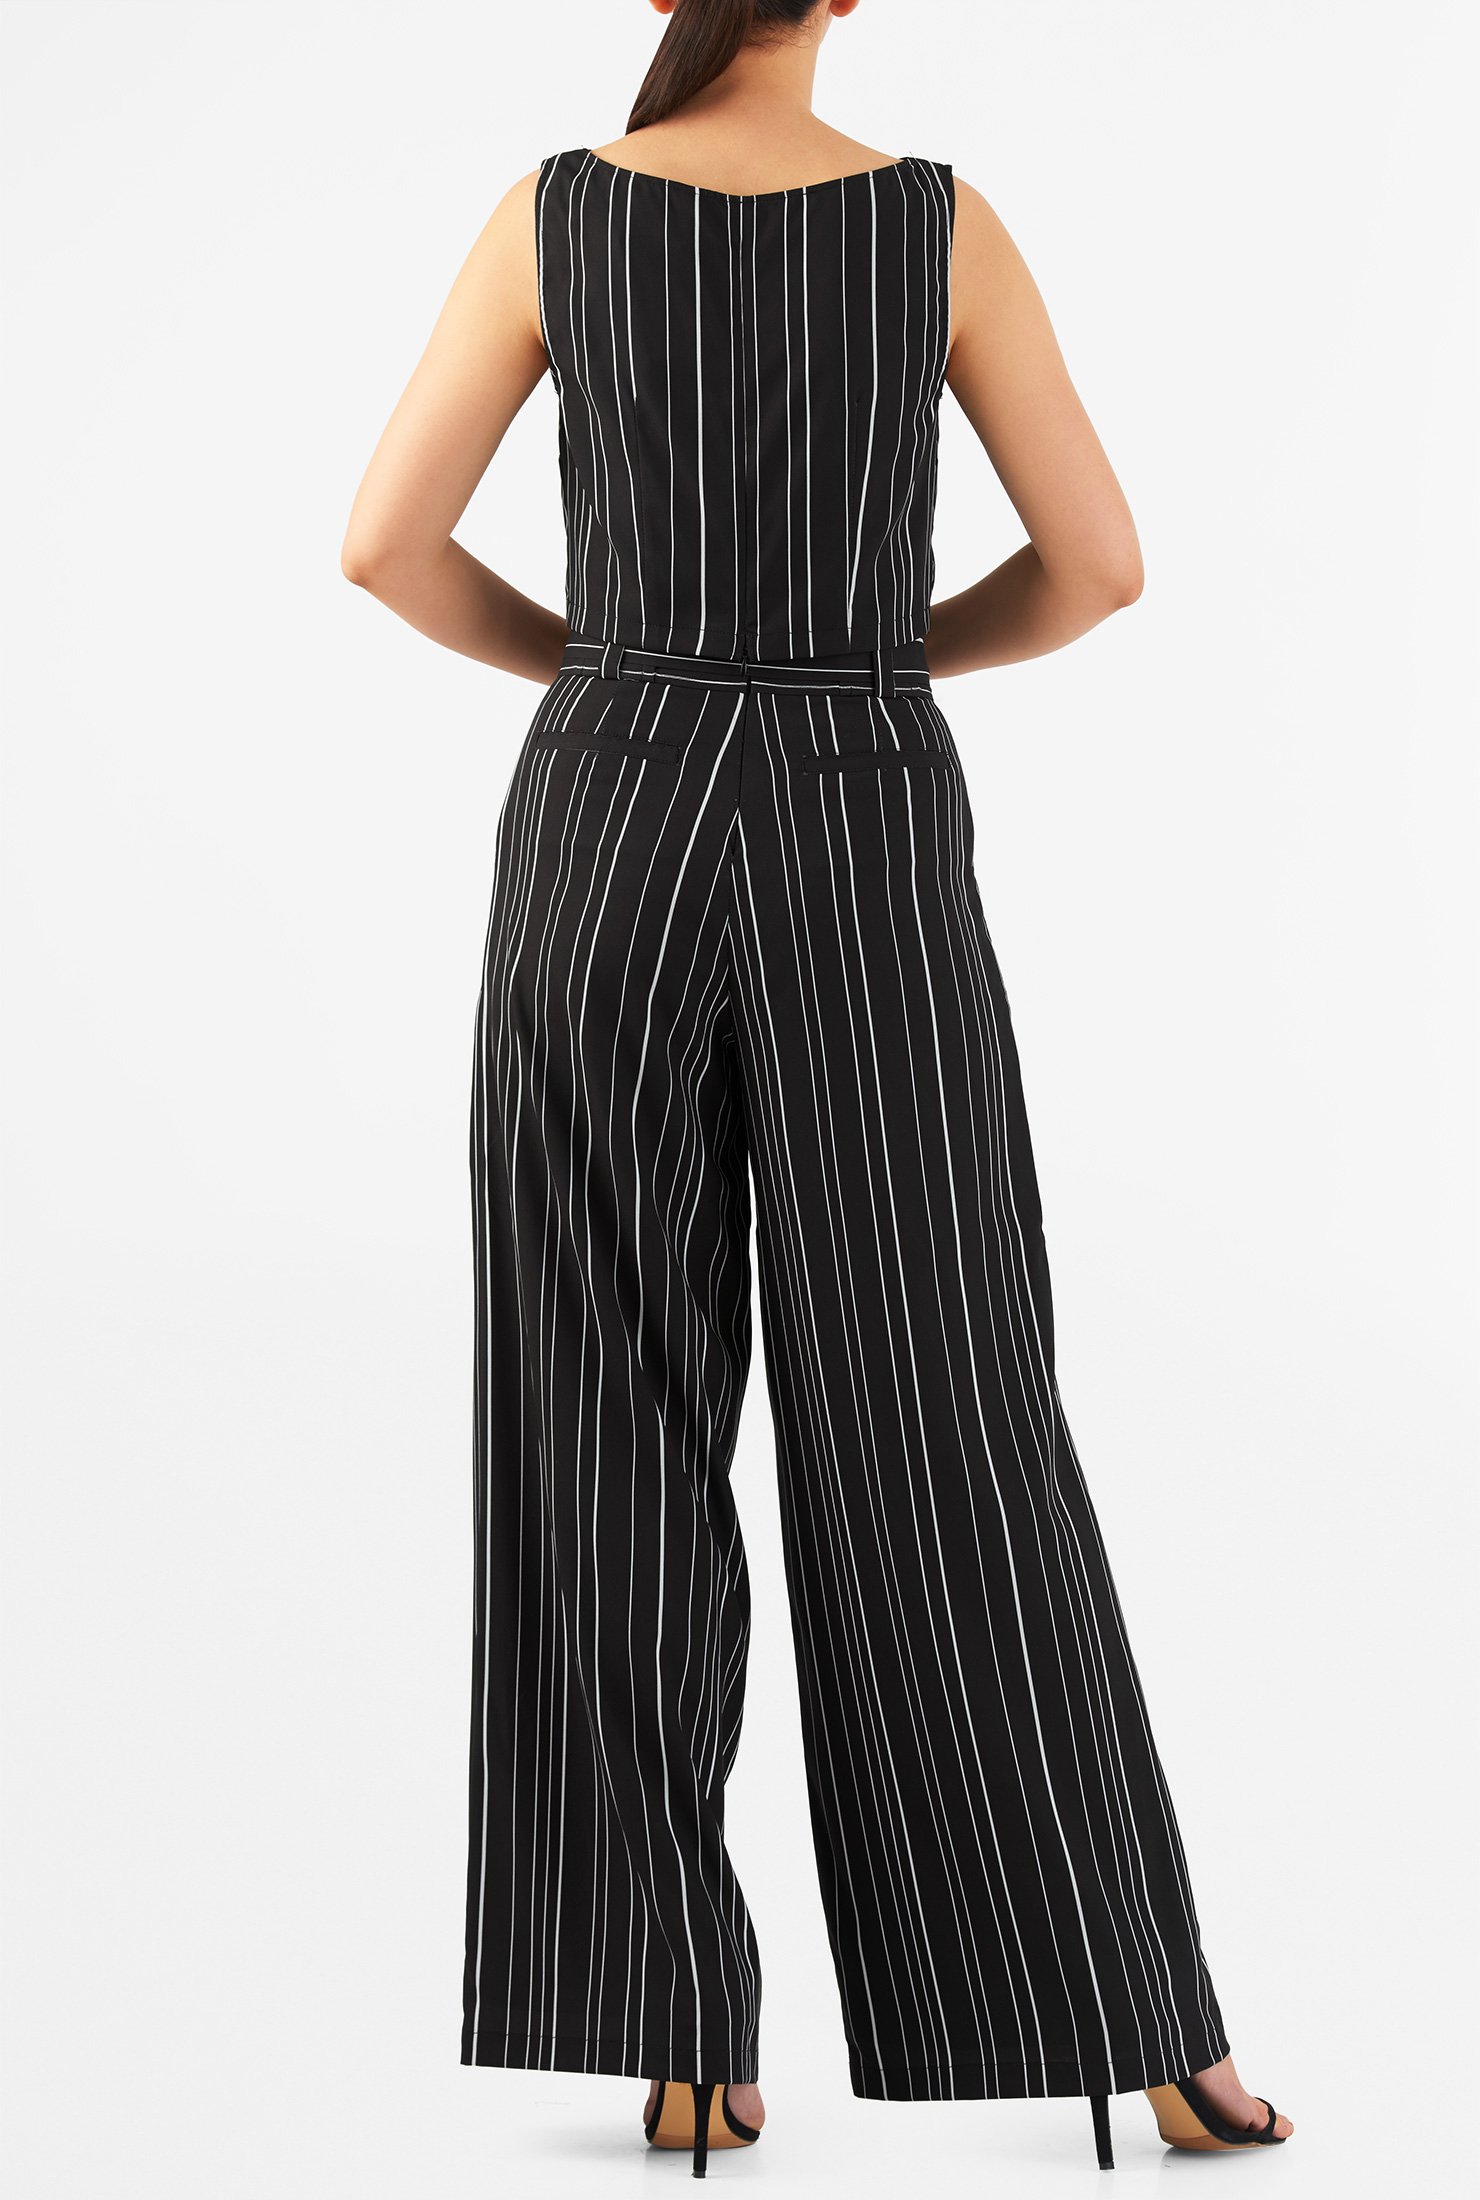 Shop Stripe print crepe tank top and wide-leg pants | eShakti